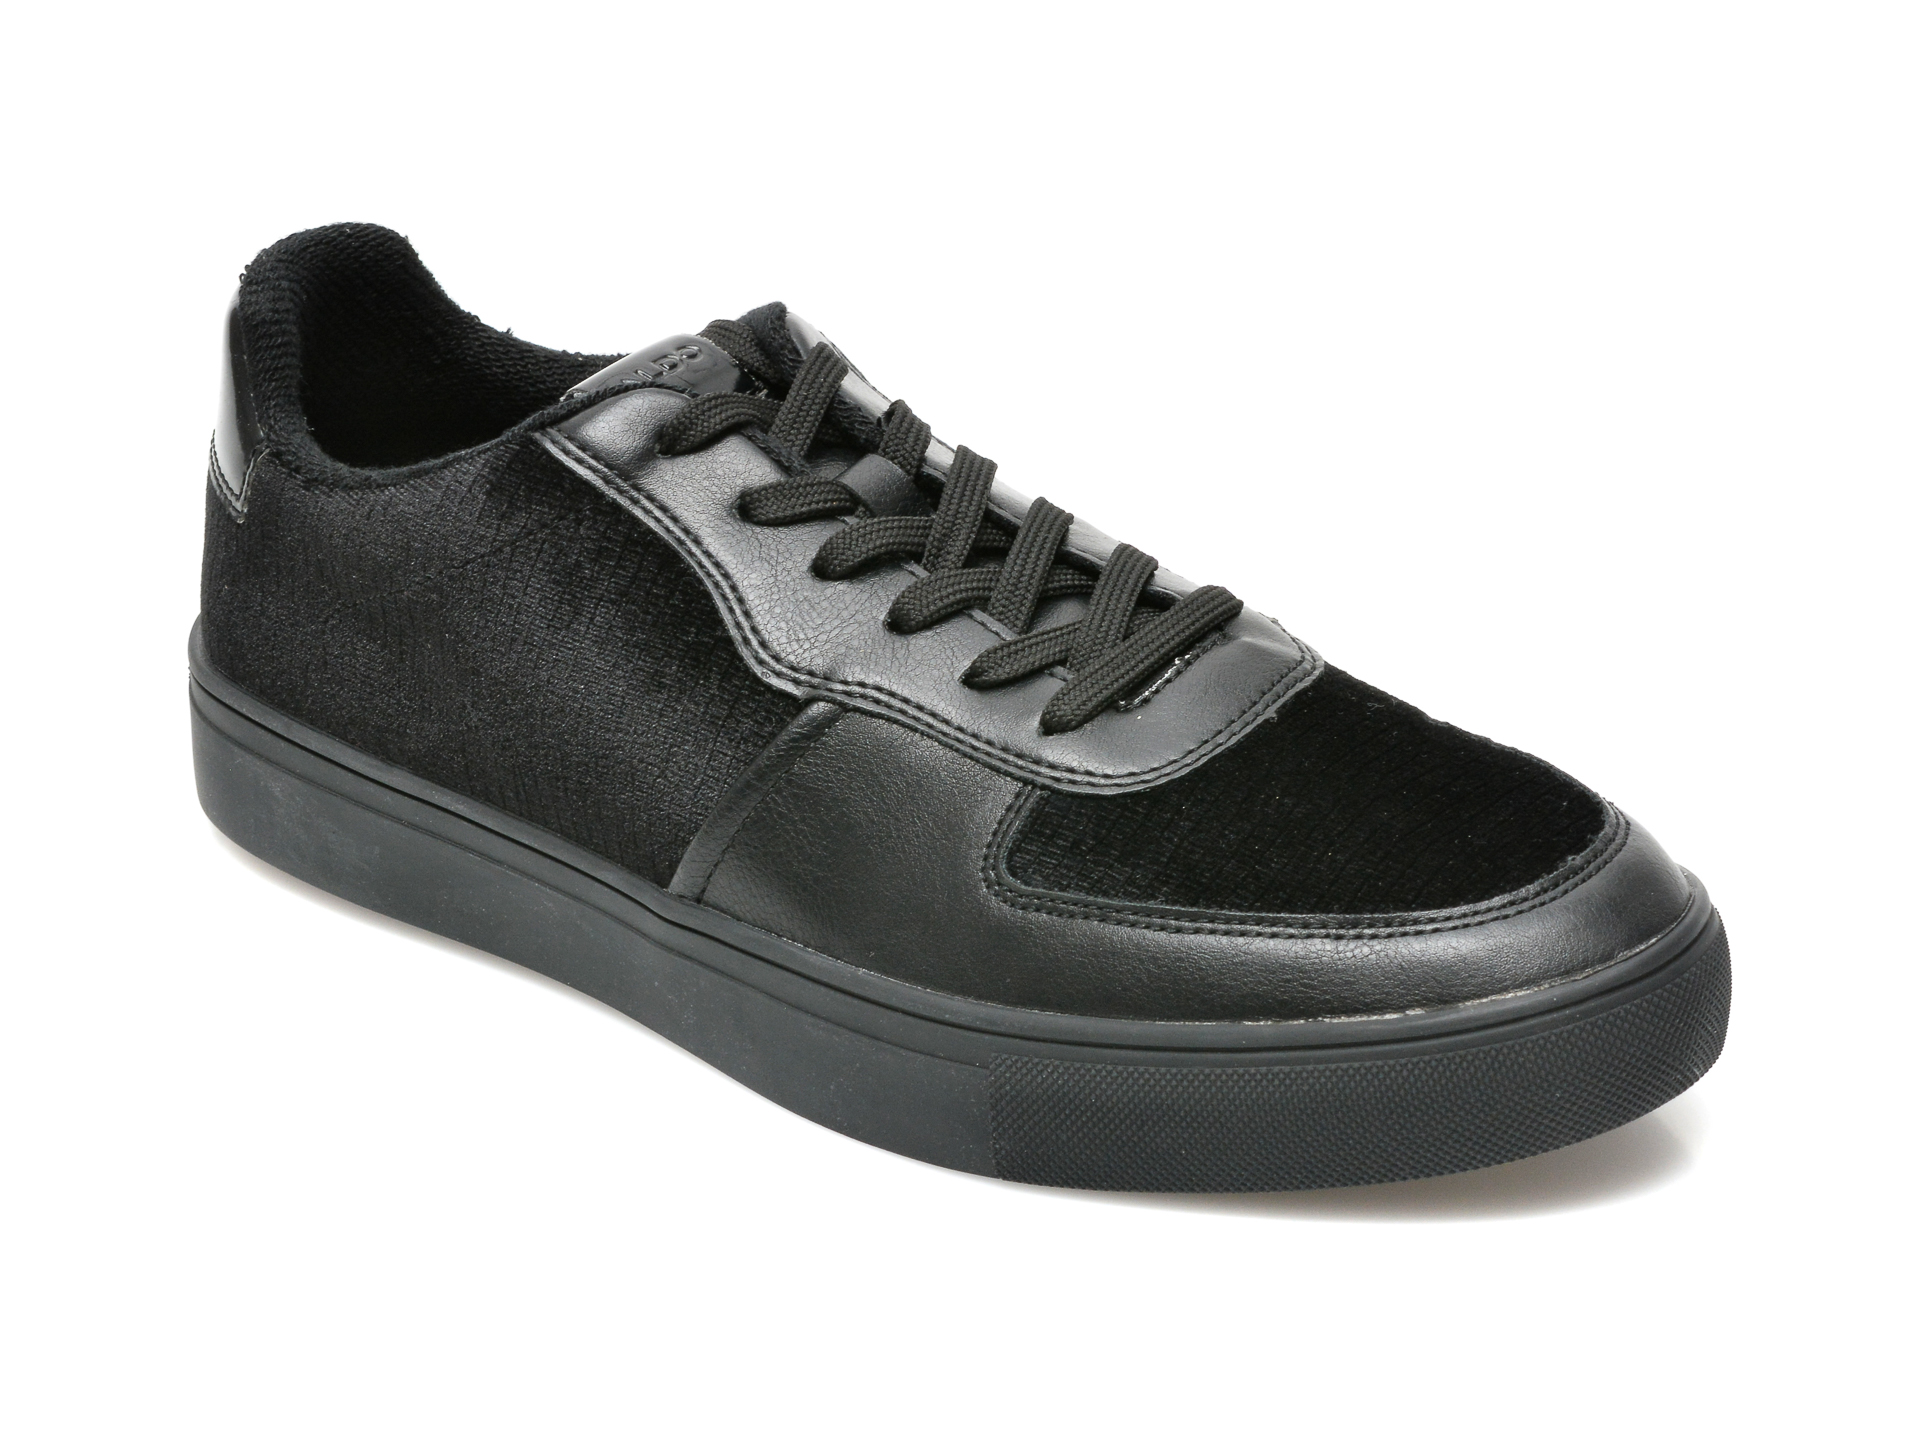 Pantofi ALDO negri, KION007, din material textil si piele ecologica Aldo imagine reduceri